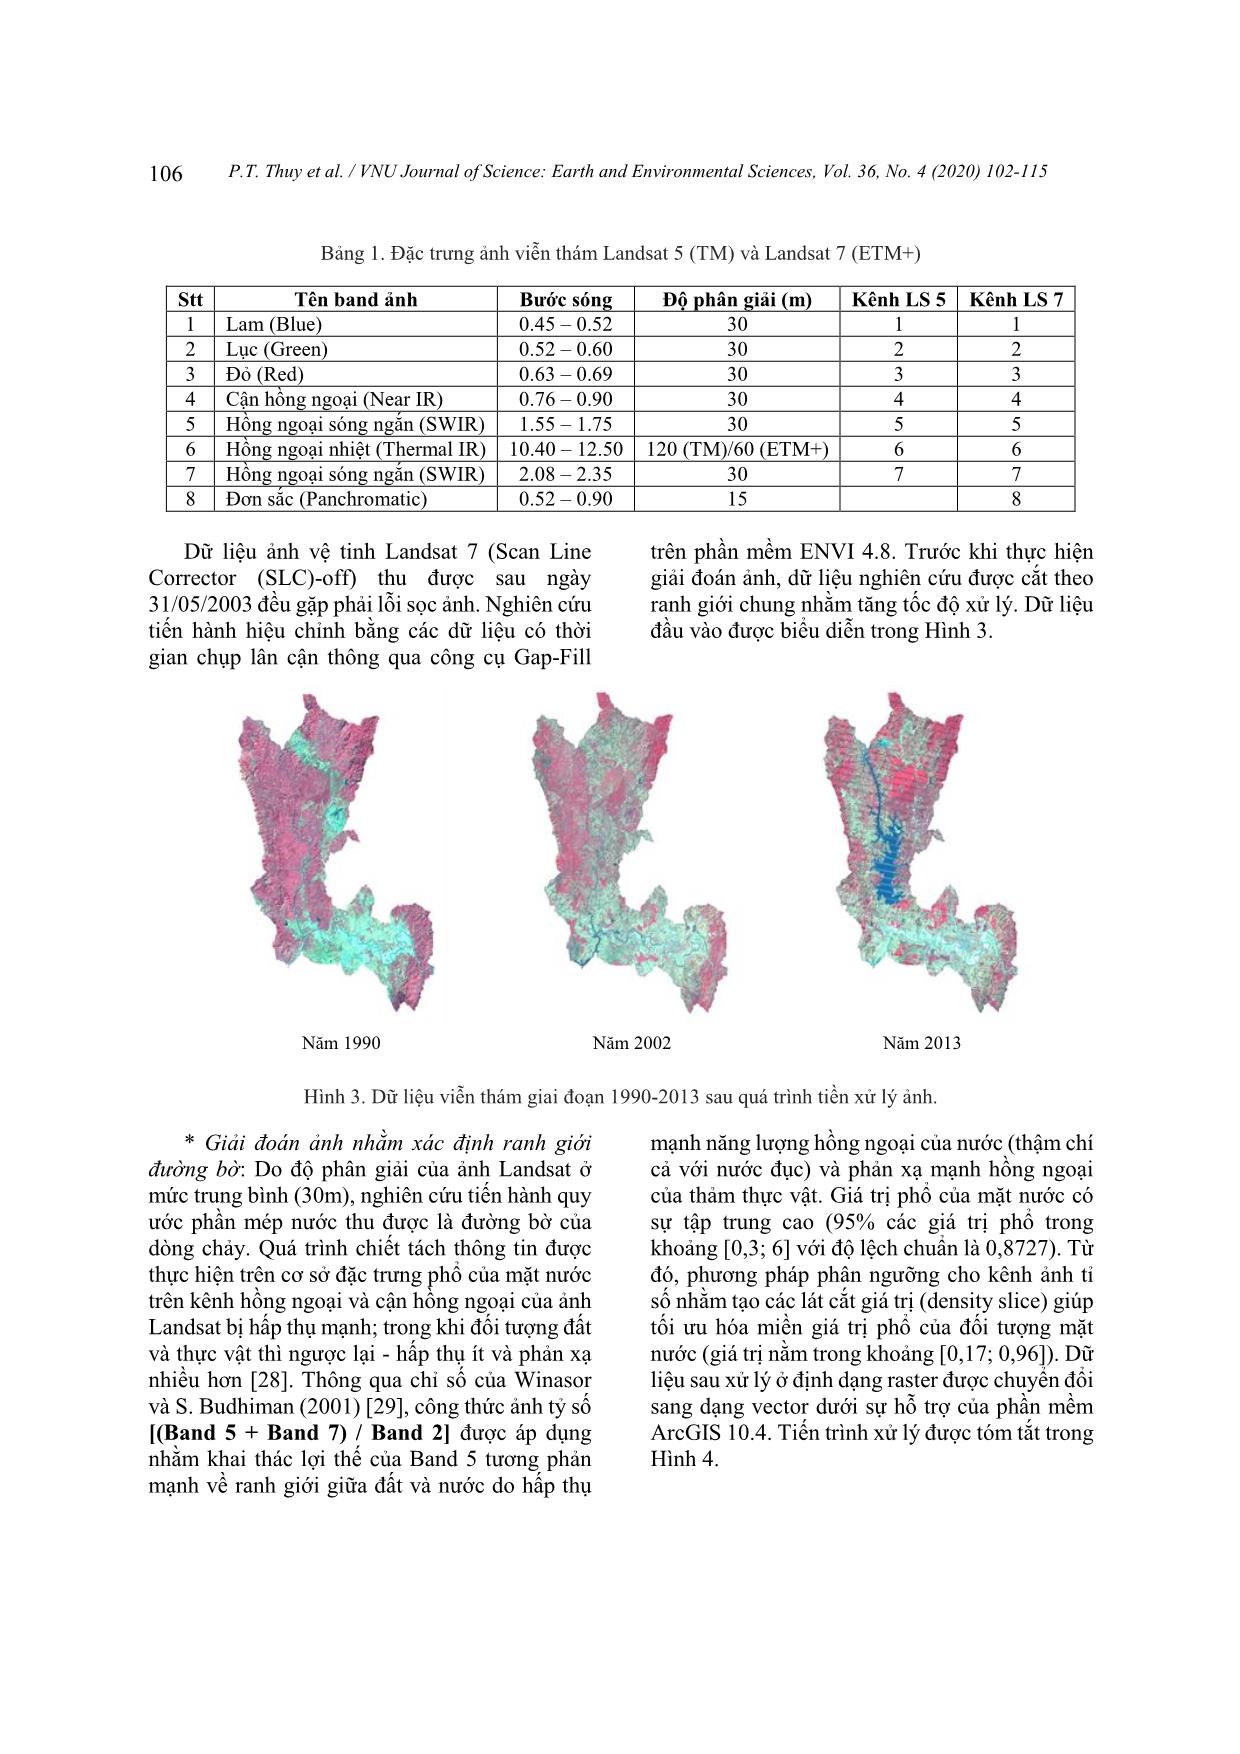 Nghiên cứu xác định biến động đường bờ thượng lưu sông Sê San, tỉnh Kontum trên cơ sở phân tích dữ liệu viễn thám đa thời gian trang 5